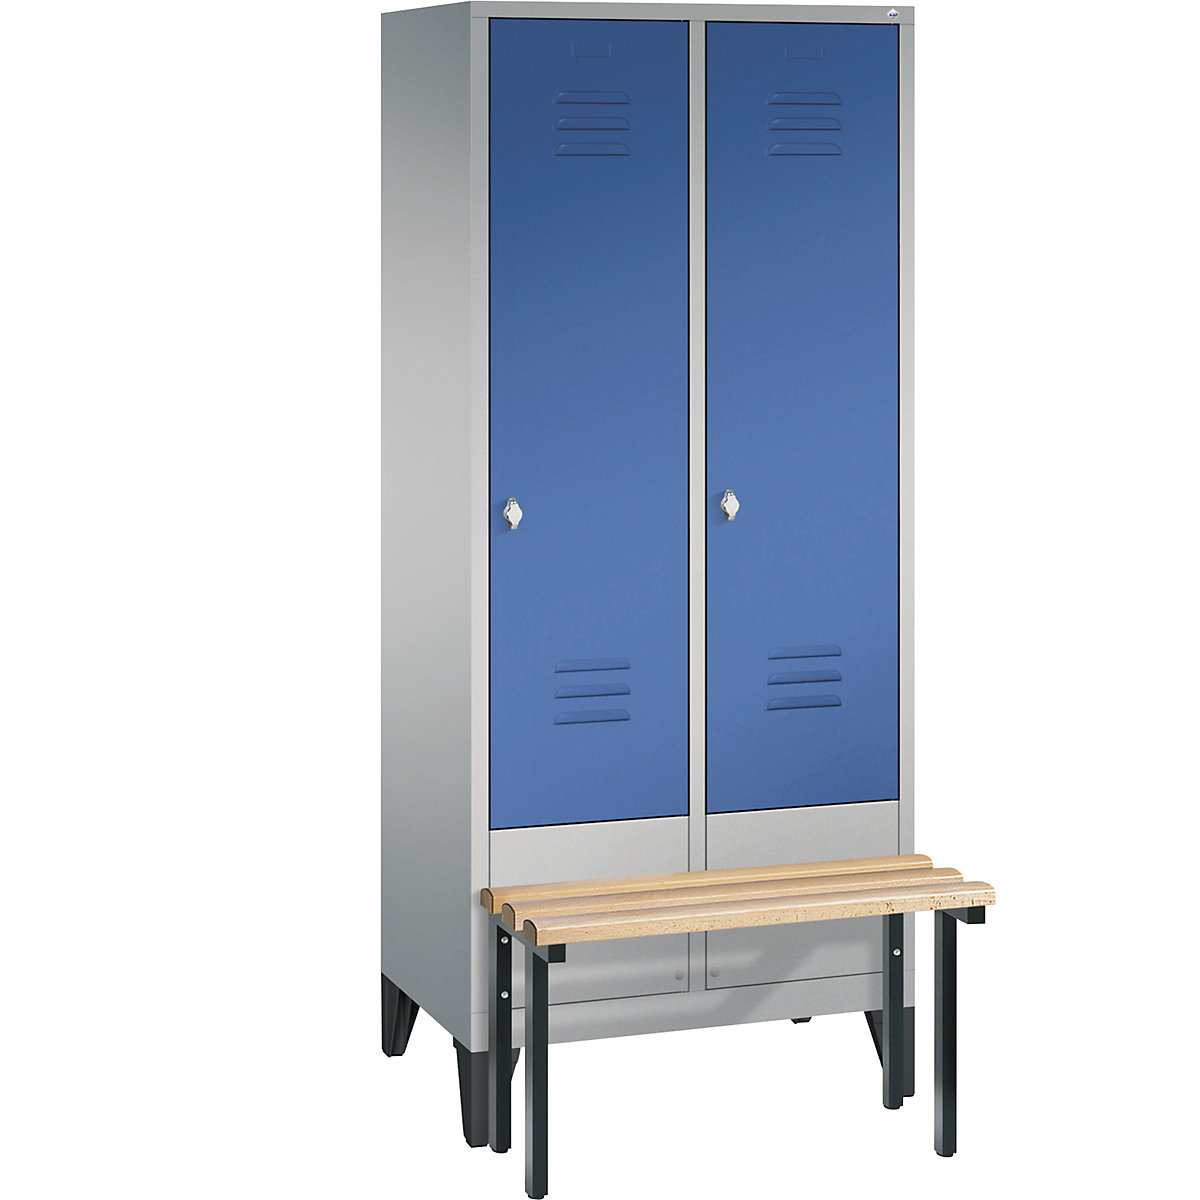 Garderobekast CLASSIC met aangebouwde zitbank – C+P, 2 afdelingen, afdelingsbreedte 400 mm, blank aluminiumkleurig / gentiaanblauw-6